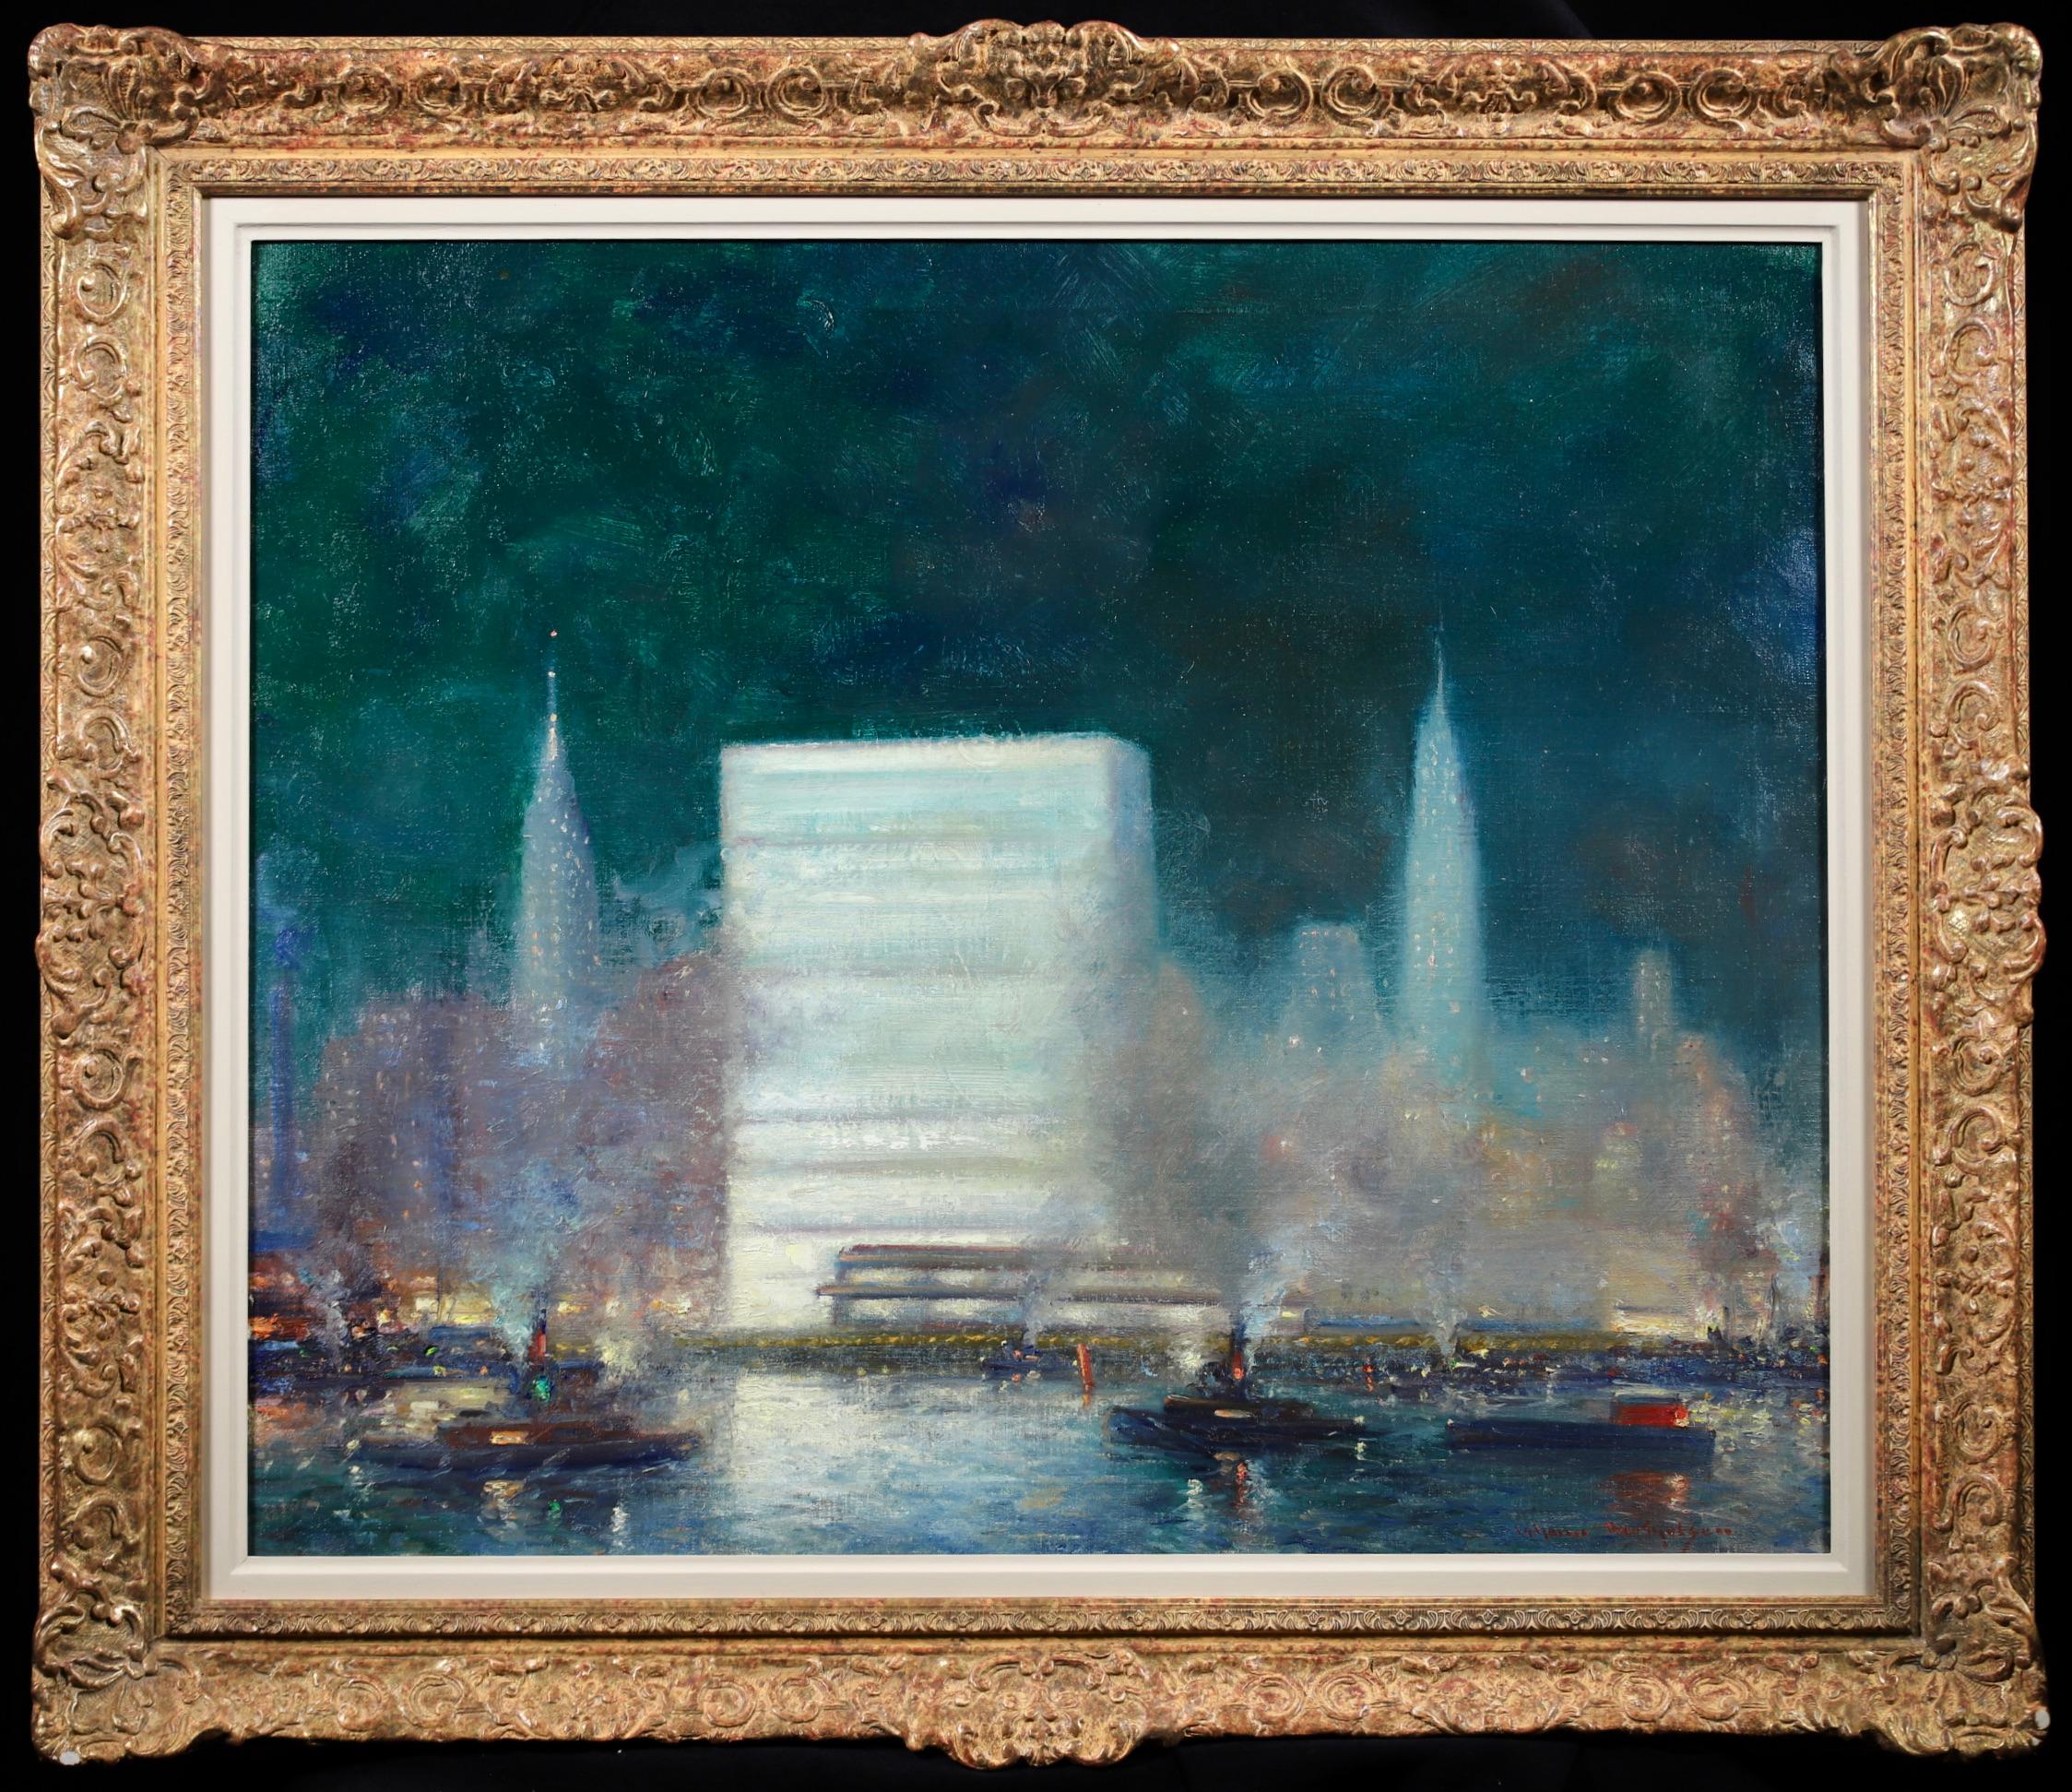 Wunderschönes Öl auf Leinwand um 1955 des amerikanischen impressionistischen Malers Johann Henrik Carl Berthelsen. Das Werk zeigt einen Blick auf die beleuchteten Gebäude am Ufer des East River in New York - insbesondere das damals gerade fertig